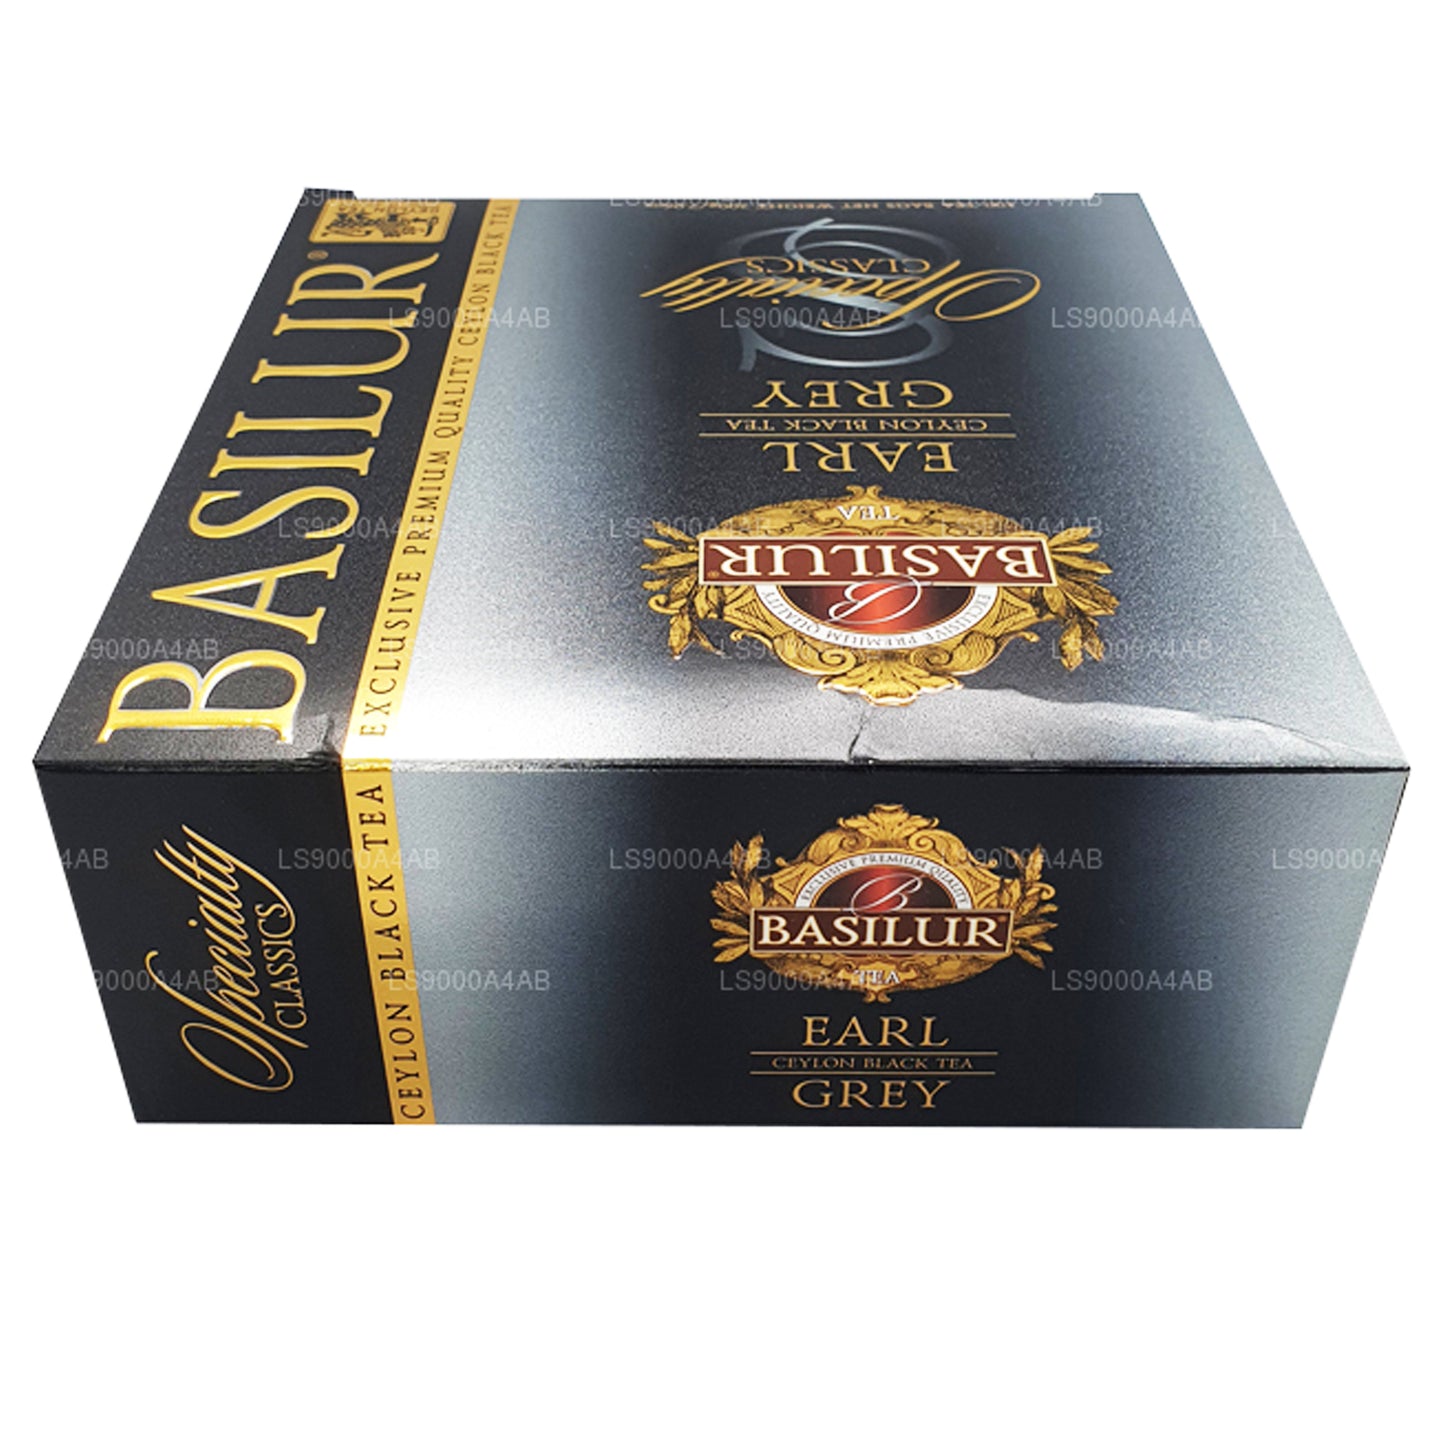 Basilur Speciality Classics Earl Grey Ceylon zwarte thee (200 g) 100 theezakjes